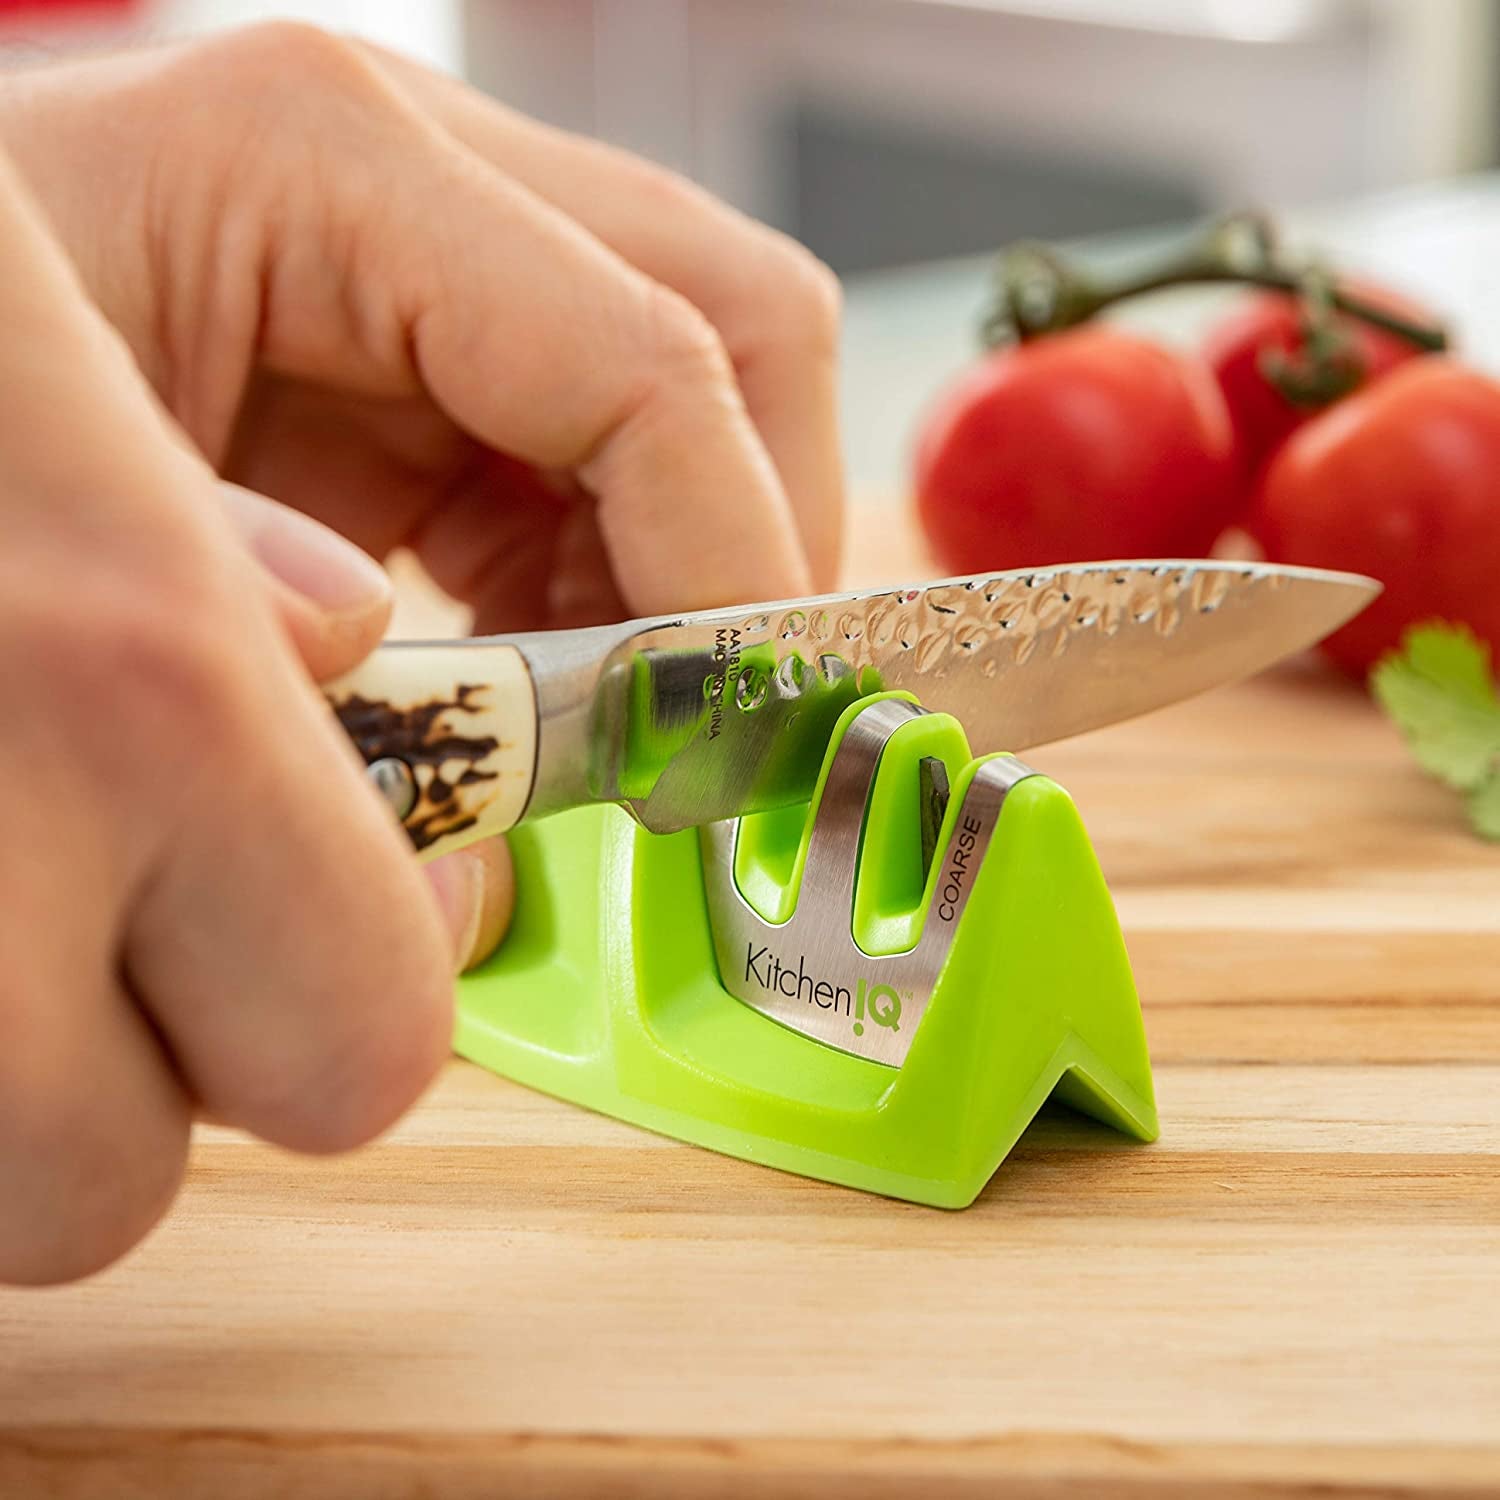 Hands running a knife through the small green sharpener 